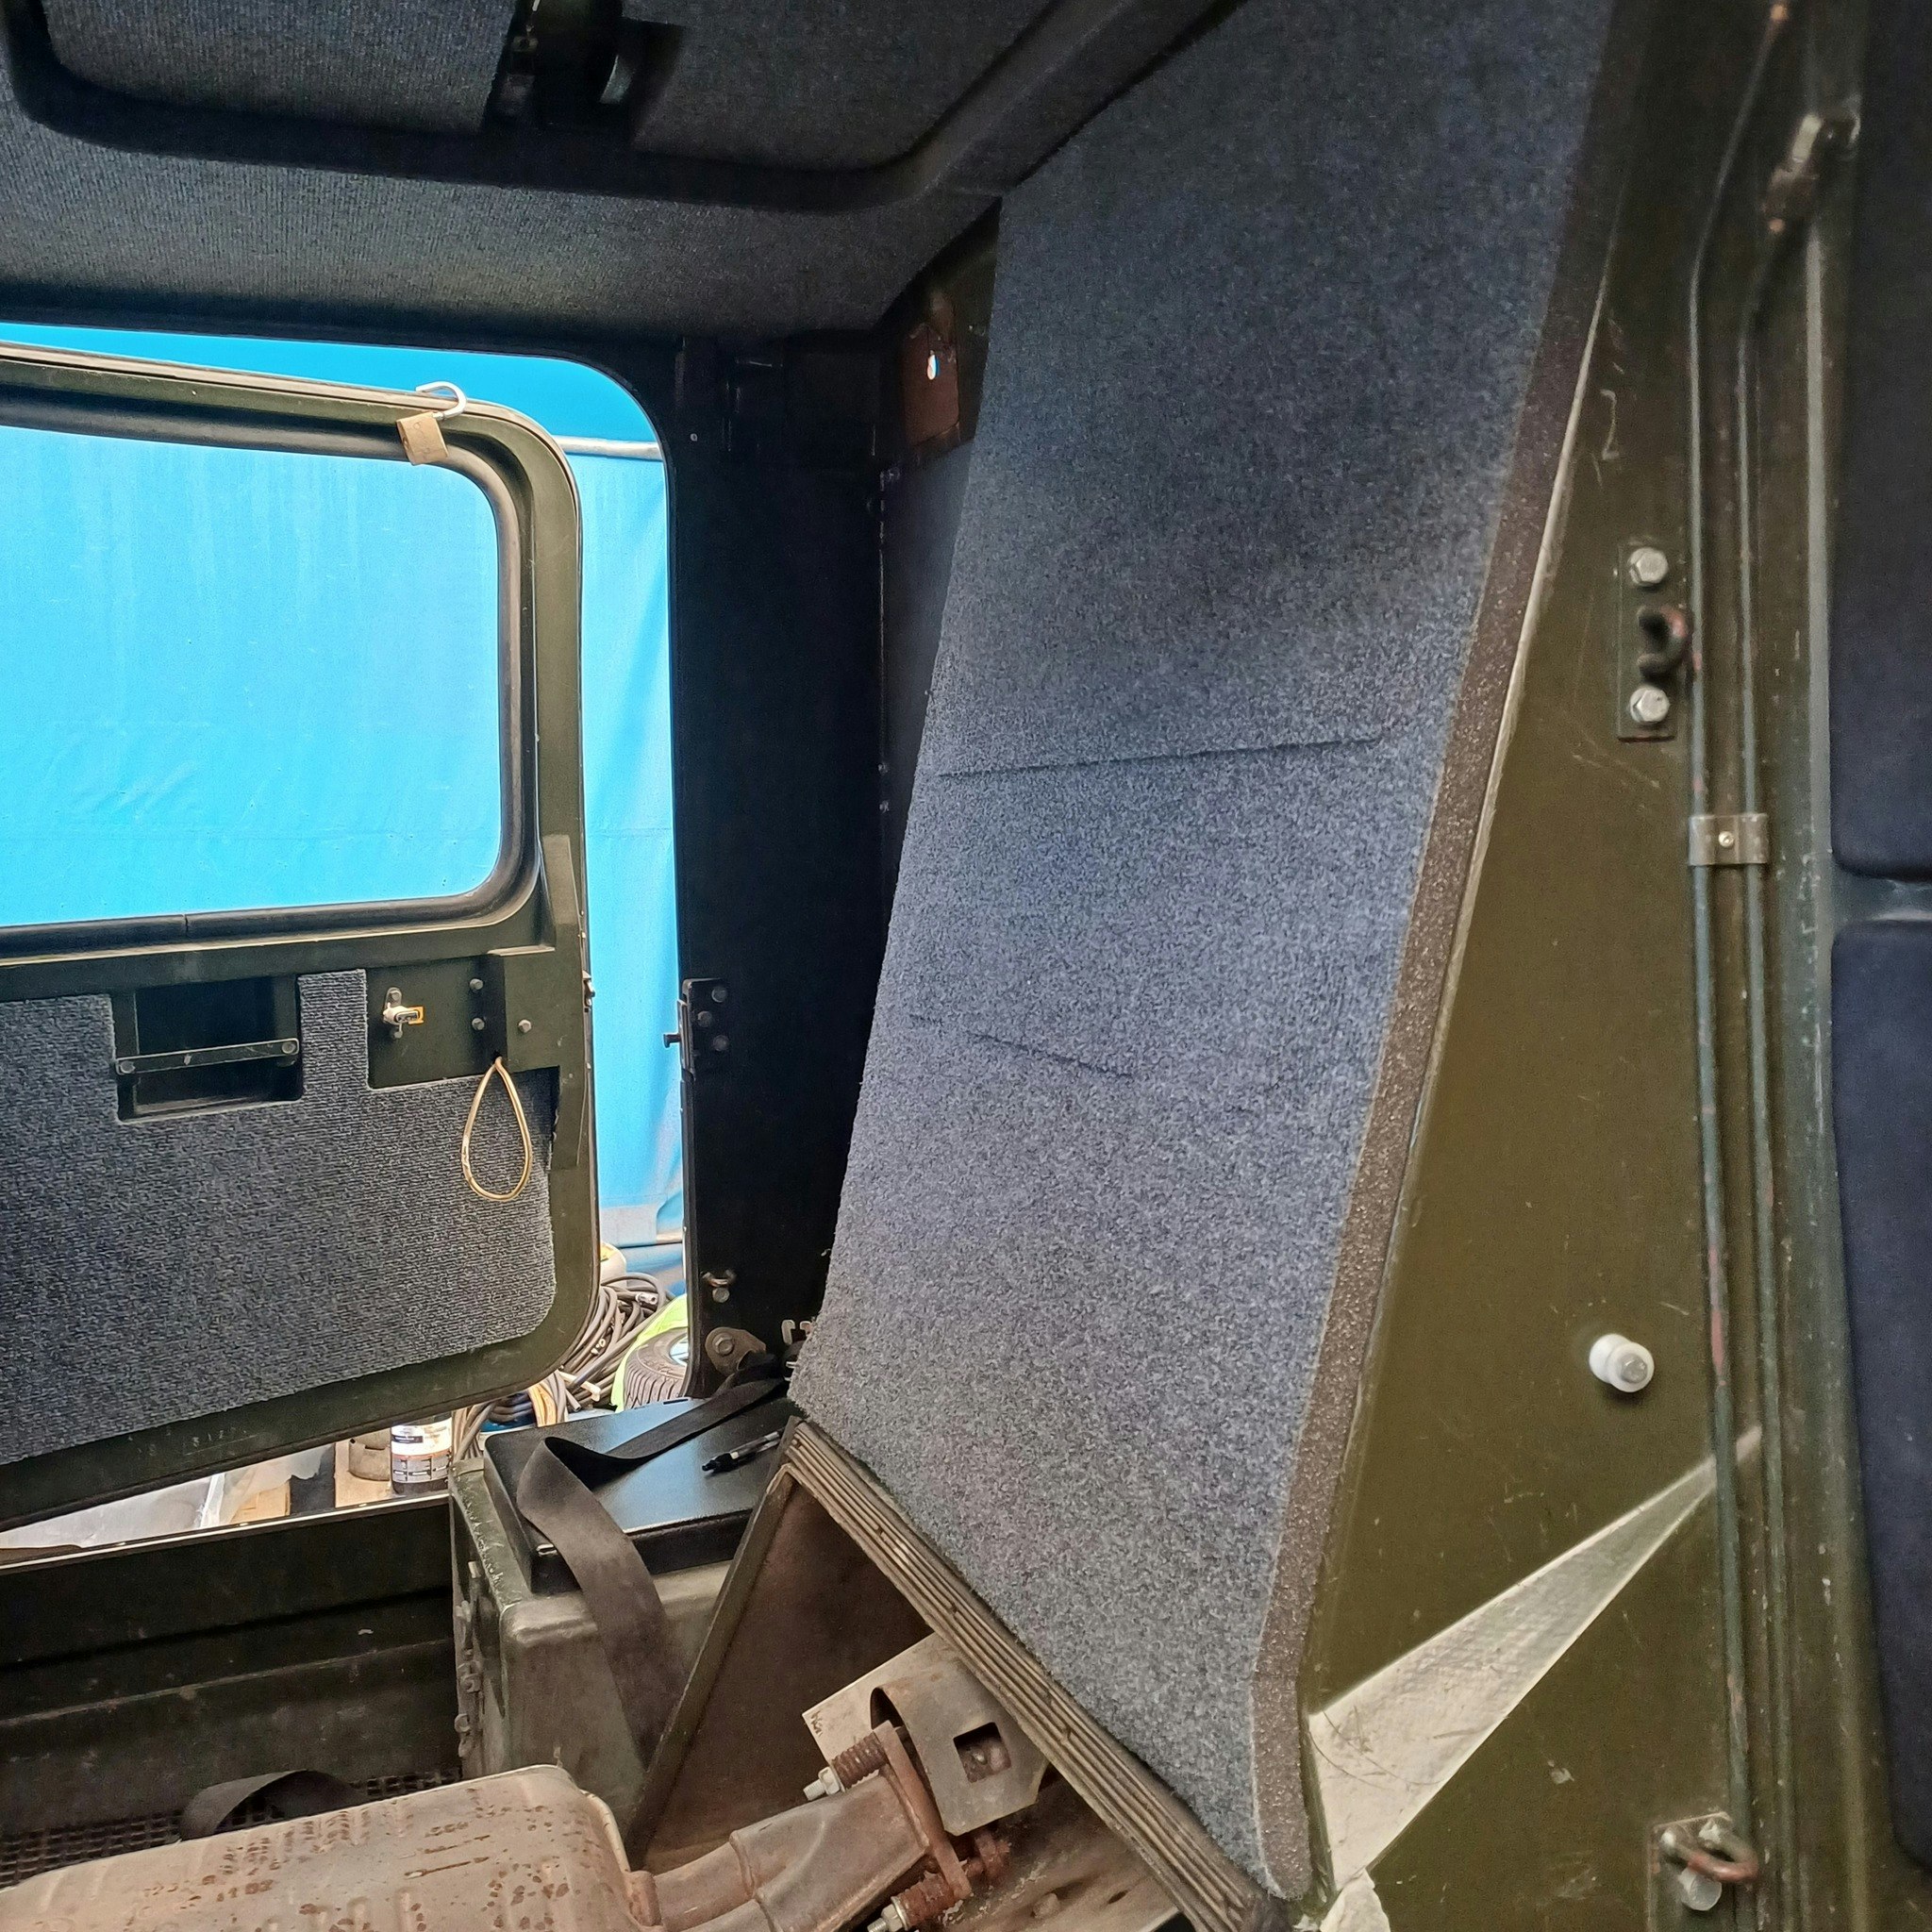 BV206 - Ljudisoleringskit för bandvagn 206